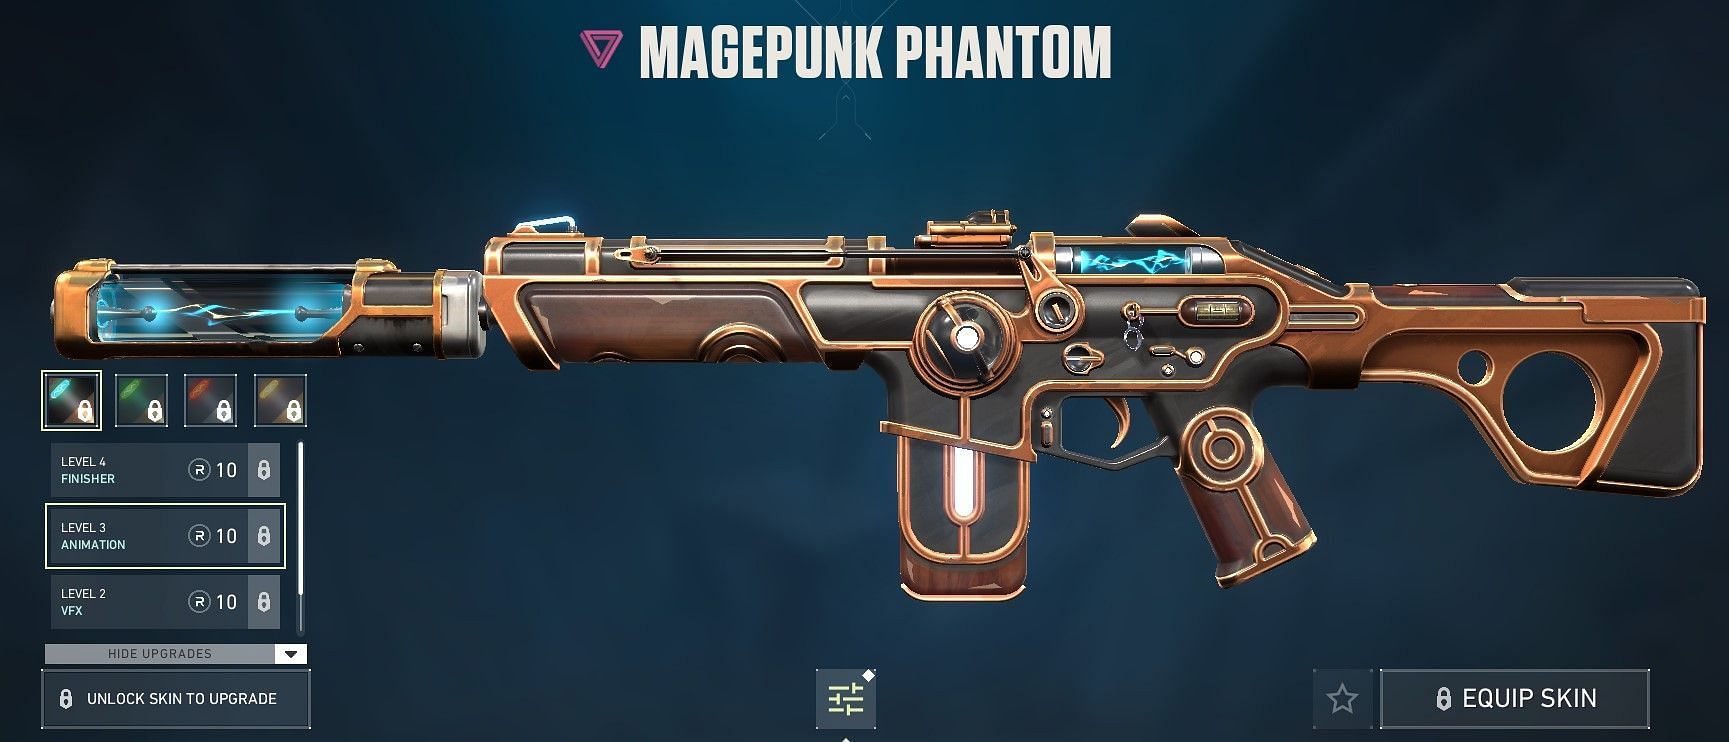 Magepunk Phantom (Image via Riot Games)